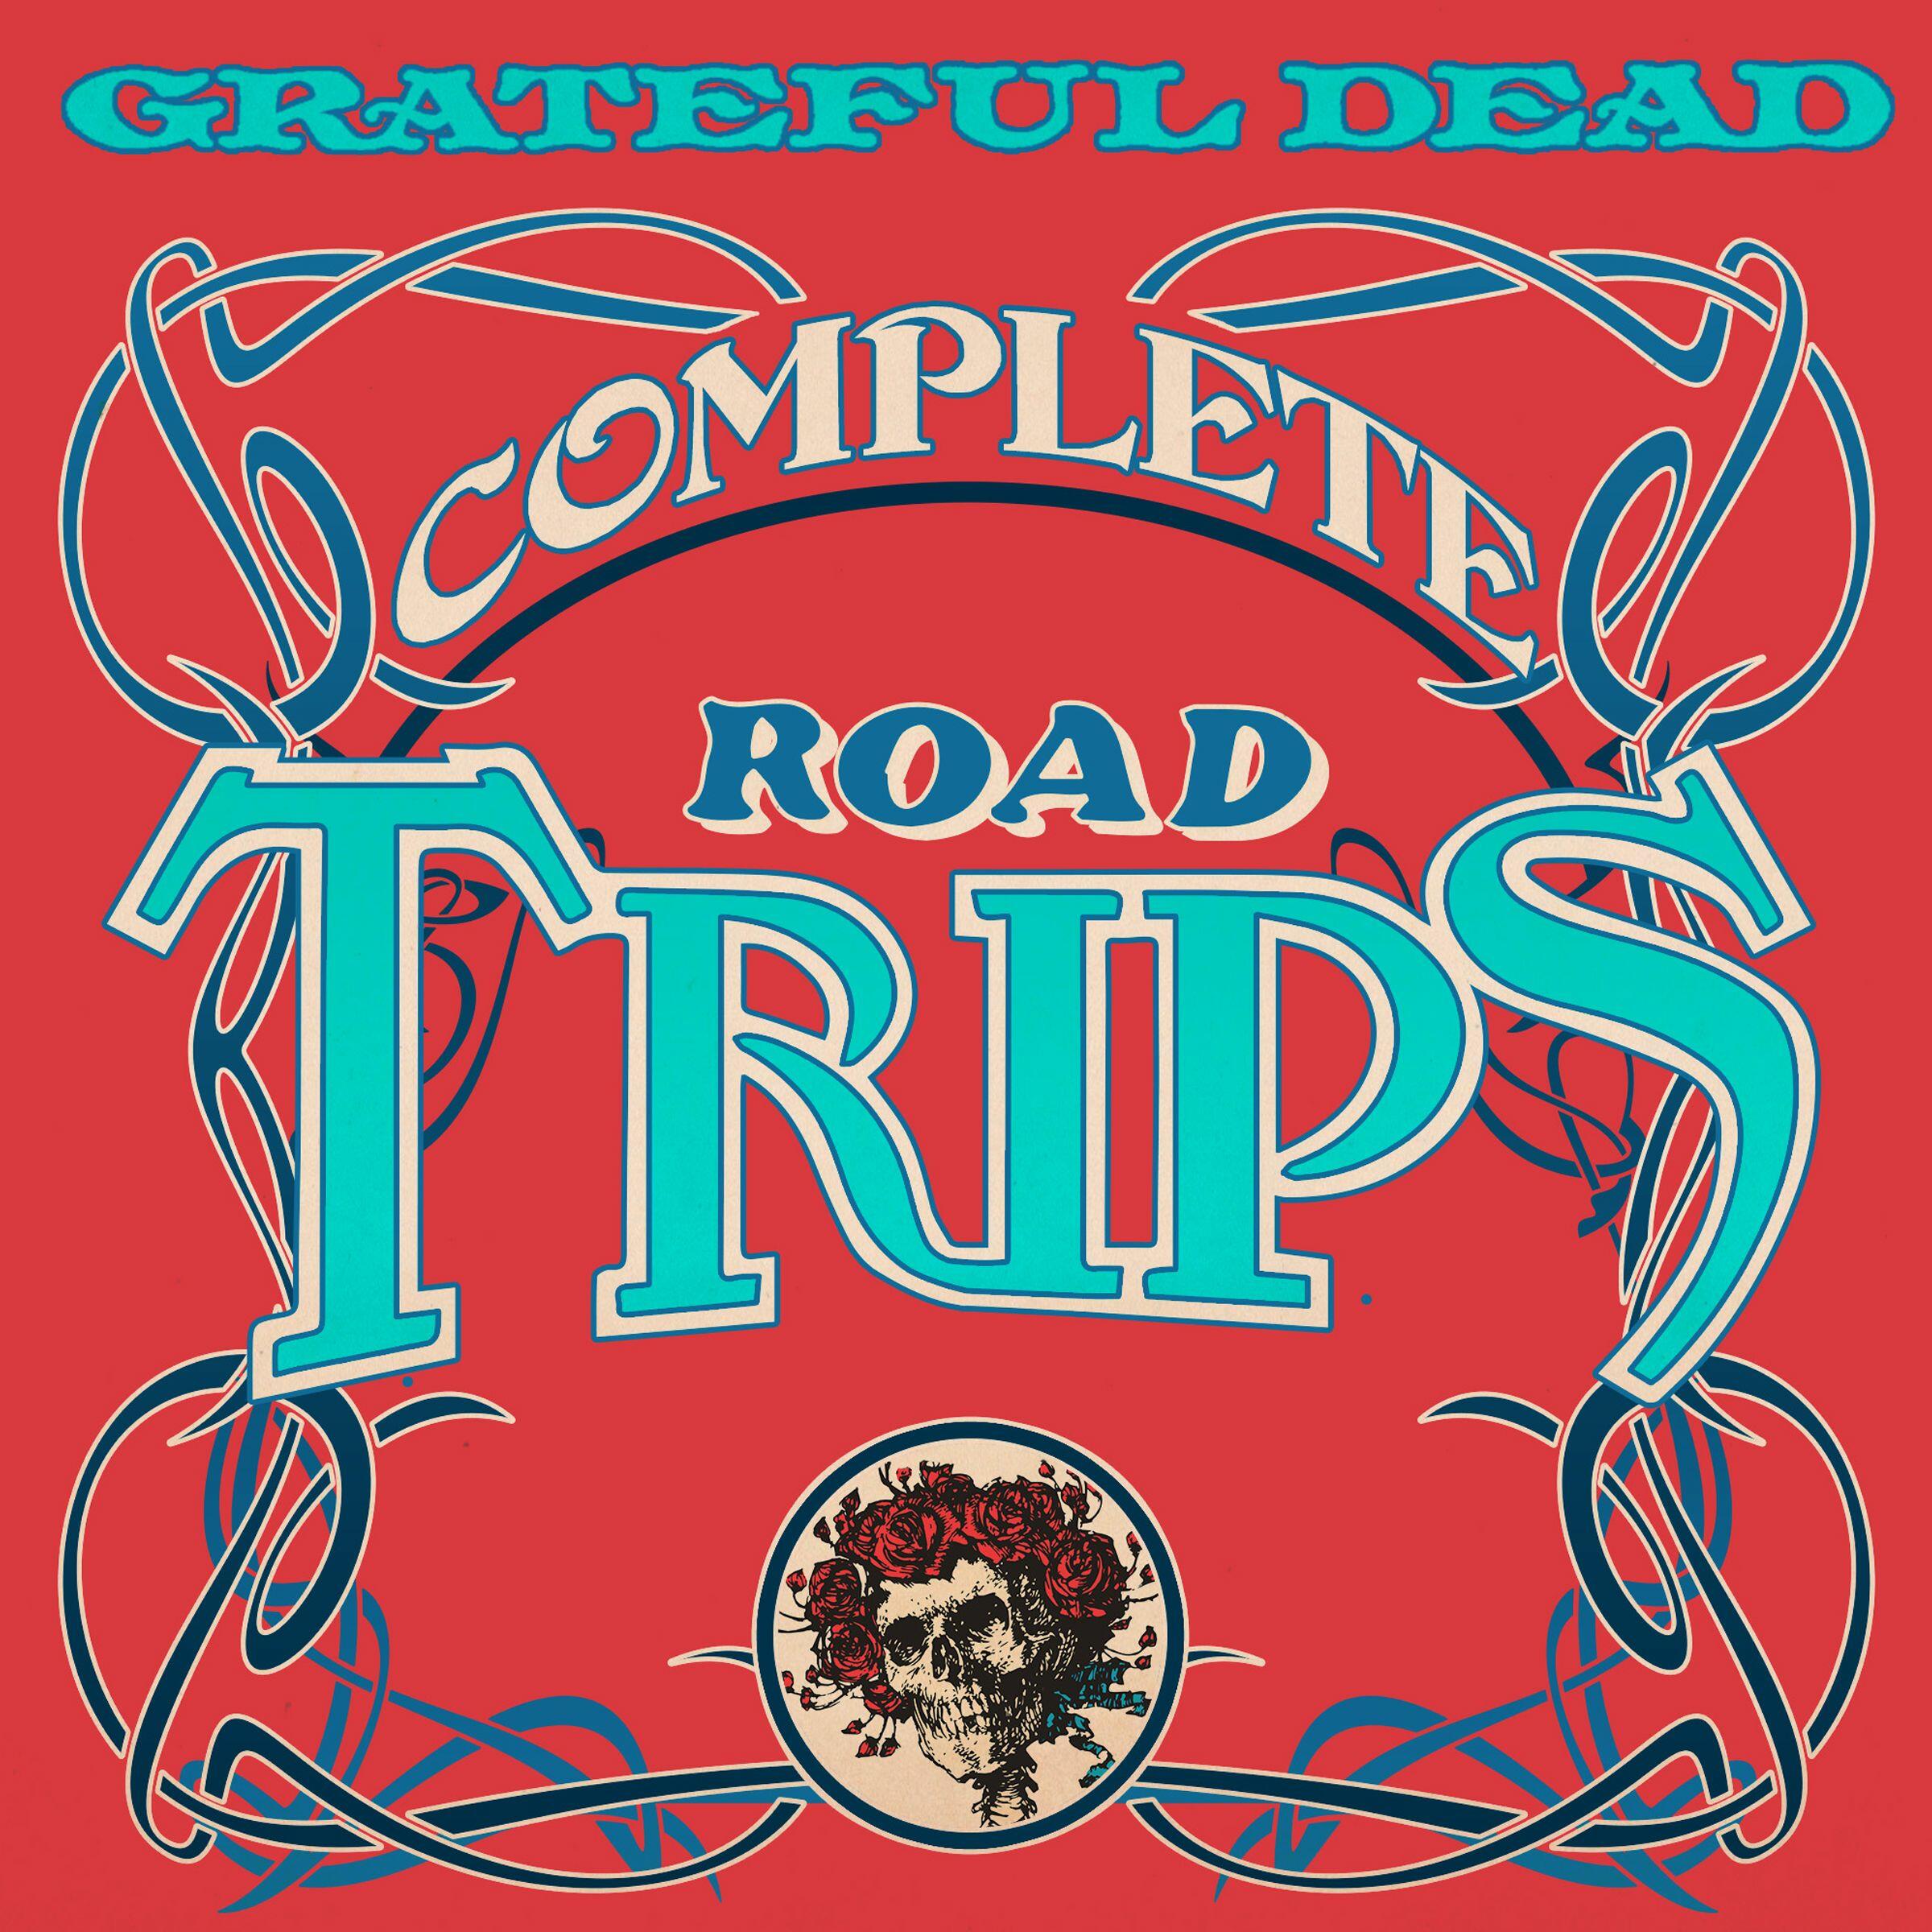 grateful dead road trips